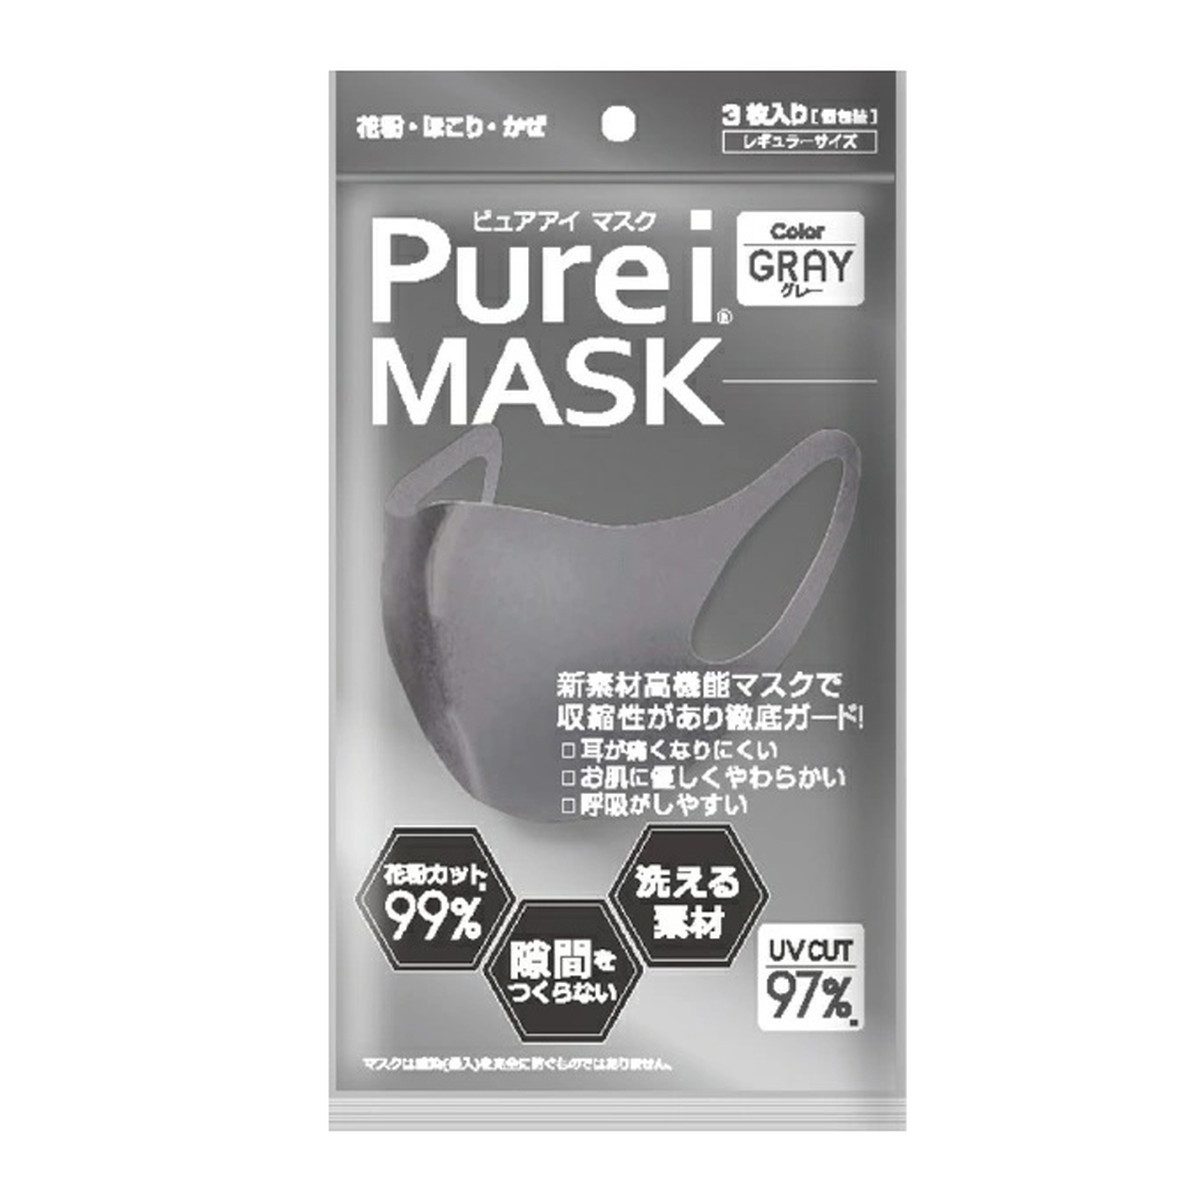 プロダクト・イノベーション Pureiマスク グレー 3枚入×1個 衛生用品マスクの商品画像